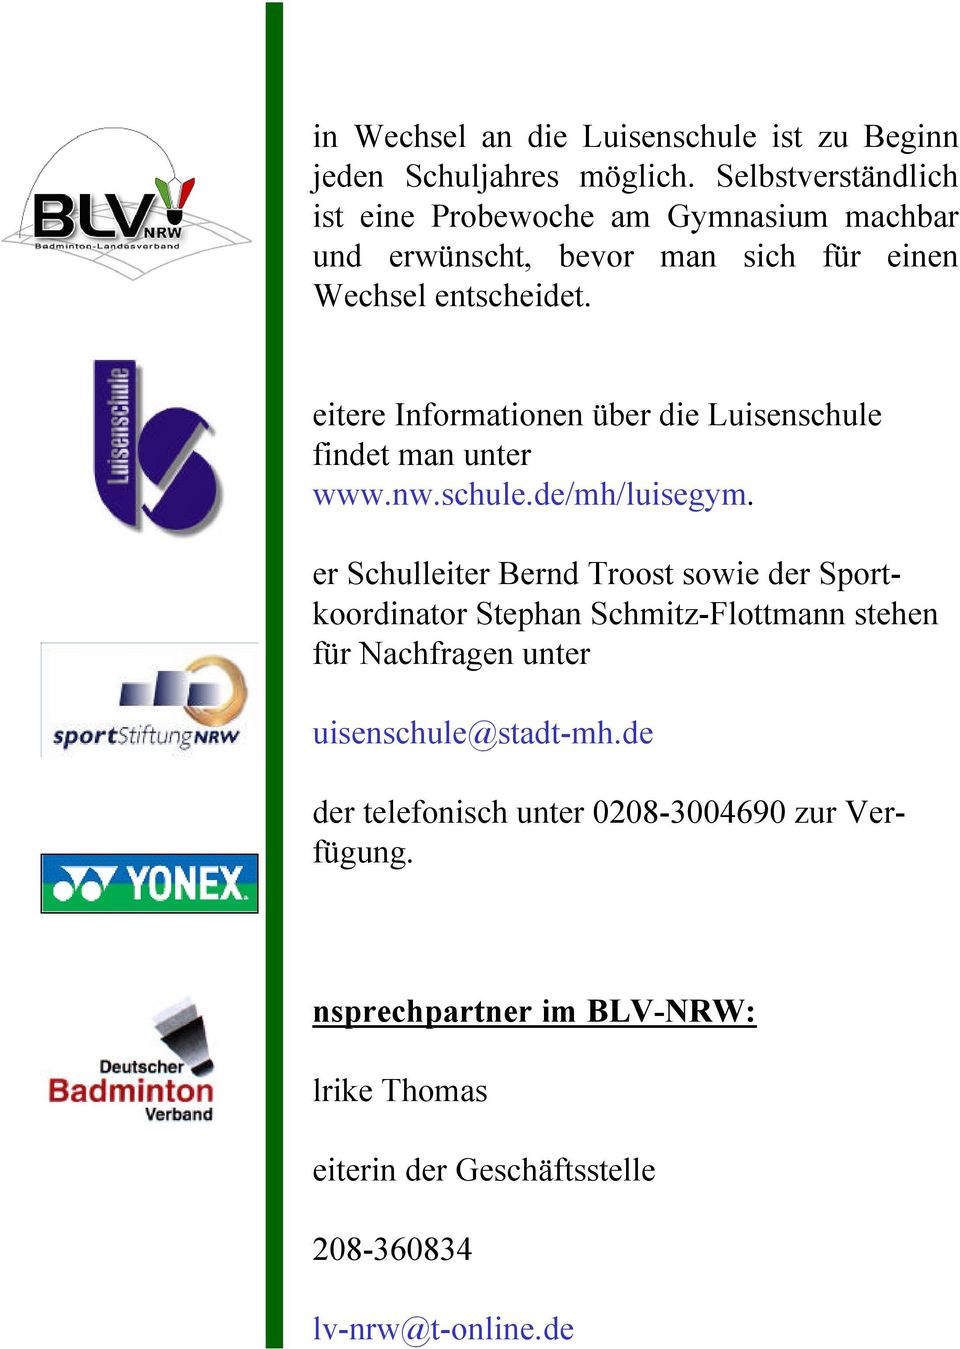 eitere Informationen über die Luisenschule findet man unter www.nw.schule.de/mh/luisegym.